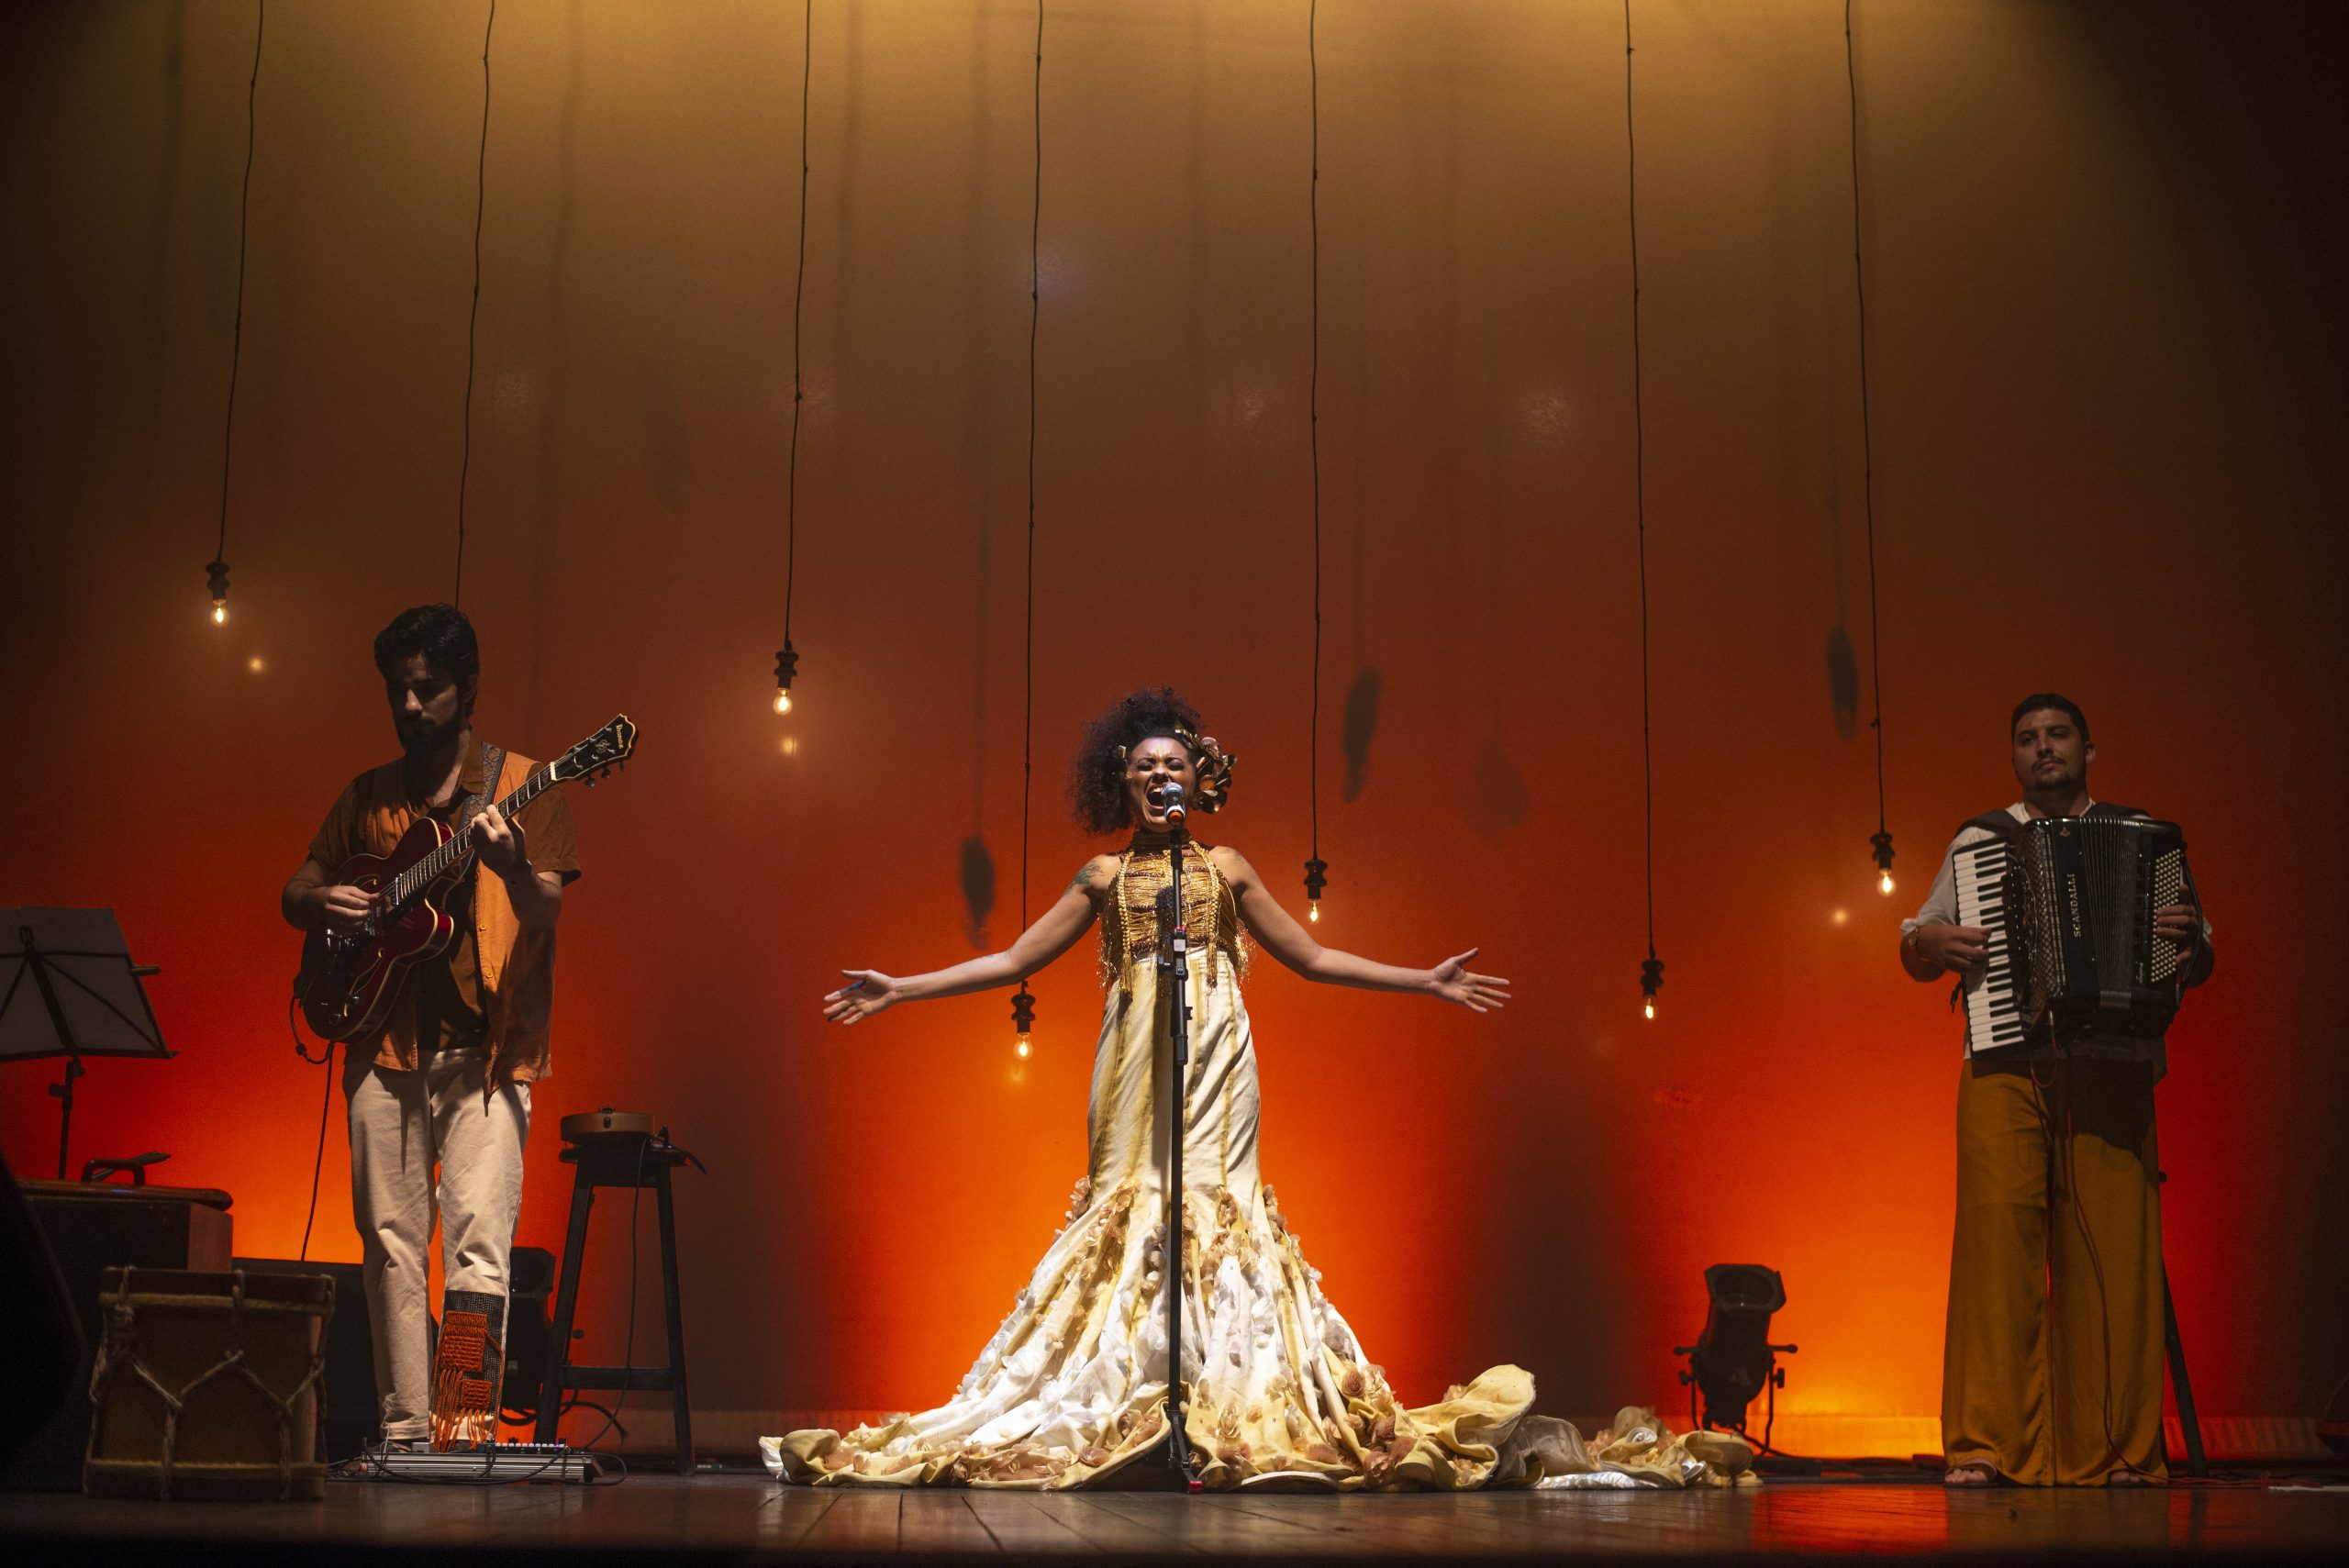 Programação Sesc: foto da cantora Luana Florentino em um palco bem iluminado, nas cores vermelho e laranja. Ela é uma mulher negra, de cabelo cacheado e preto, e usa um vestido longo e claro enquanto levanta as mãos para o alto. Também há um músico de cada lado do palco.